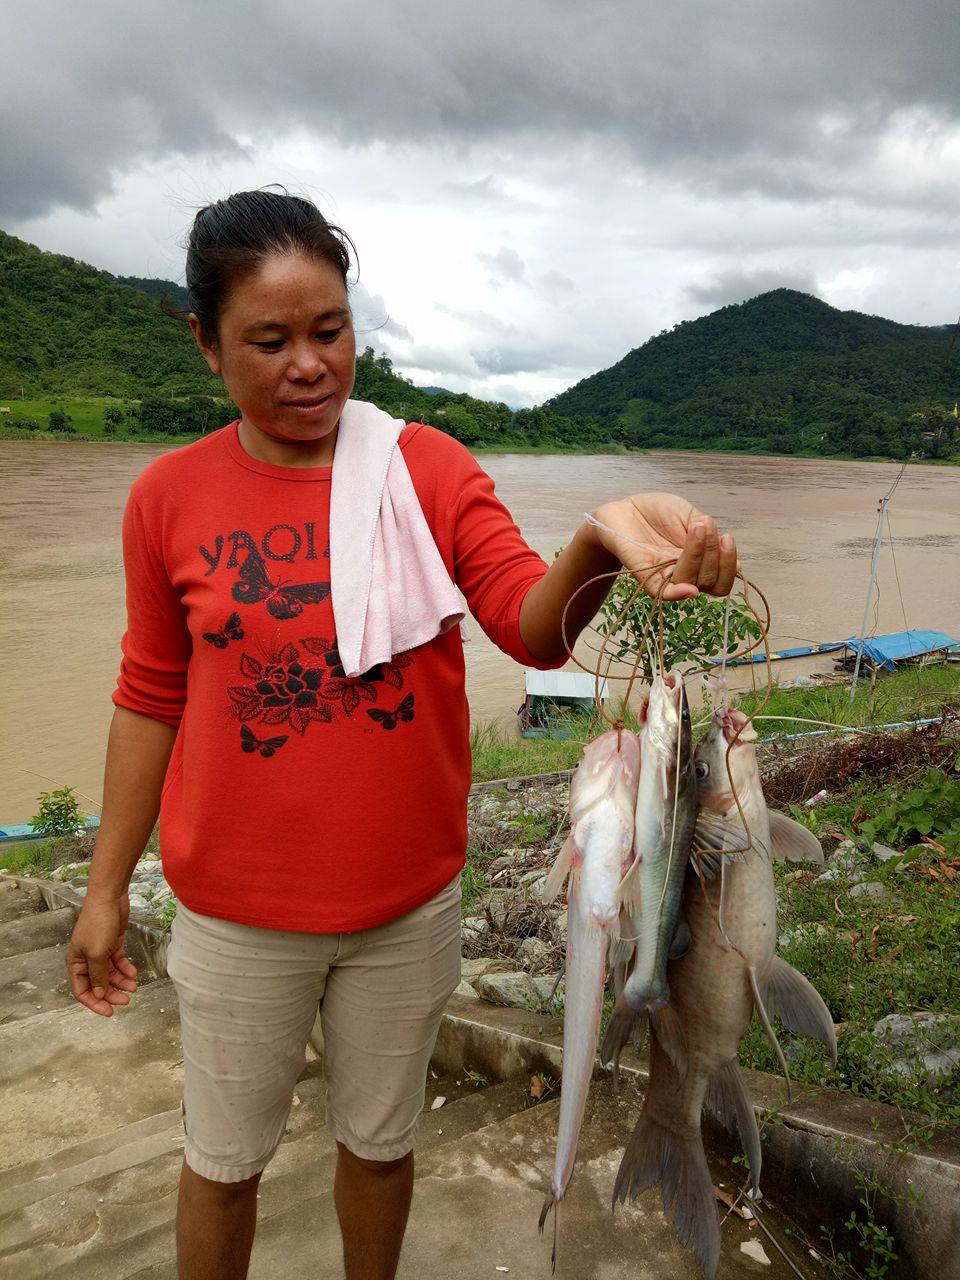 แม่ค้าปลาซึ่งเป็นแม่บ้านของพราณปลา ช่วยจัดเก็บปลาเพื่อนำไปบริโภคในครัวเรือนต่อไป อีกหนึ่งบทบาทสำคัญของผู้หญิง